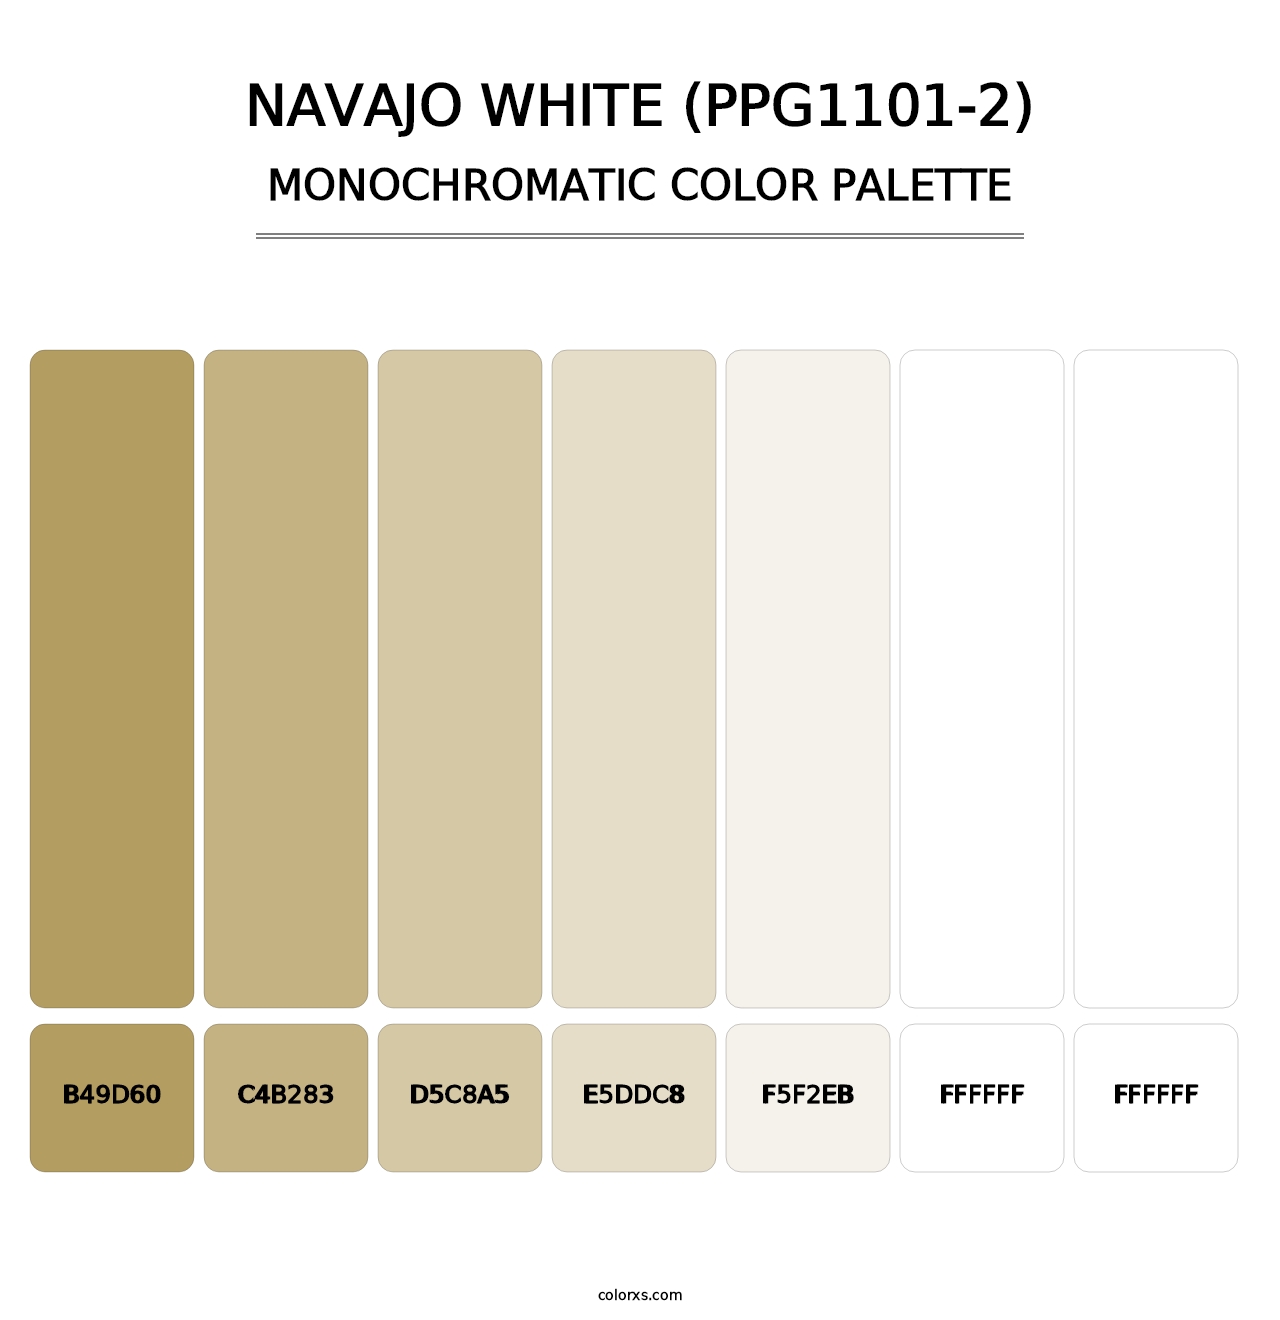 Navajo White (PPG1101-2) - Monochromatic Color Palette